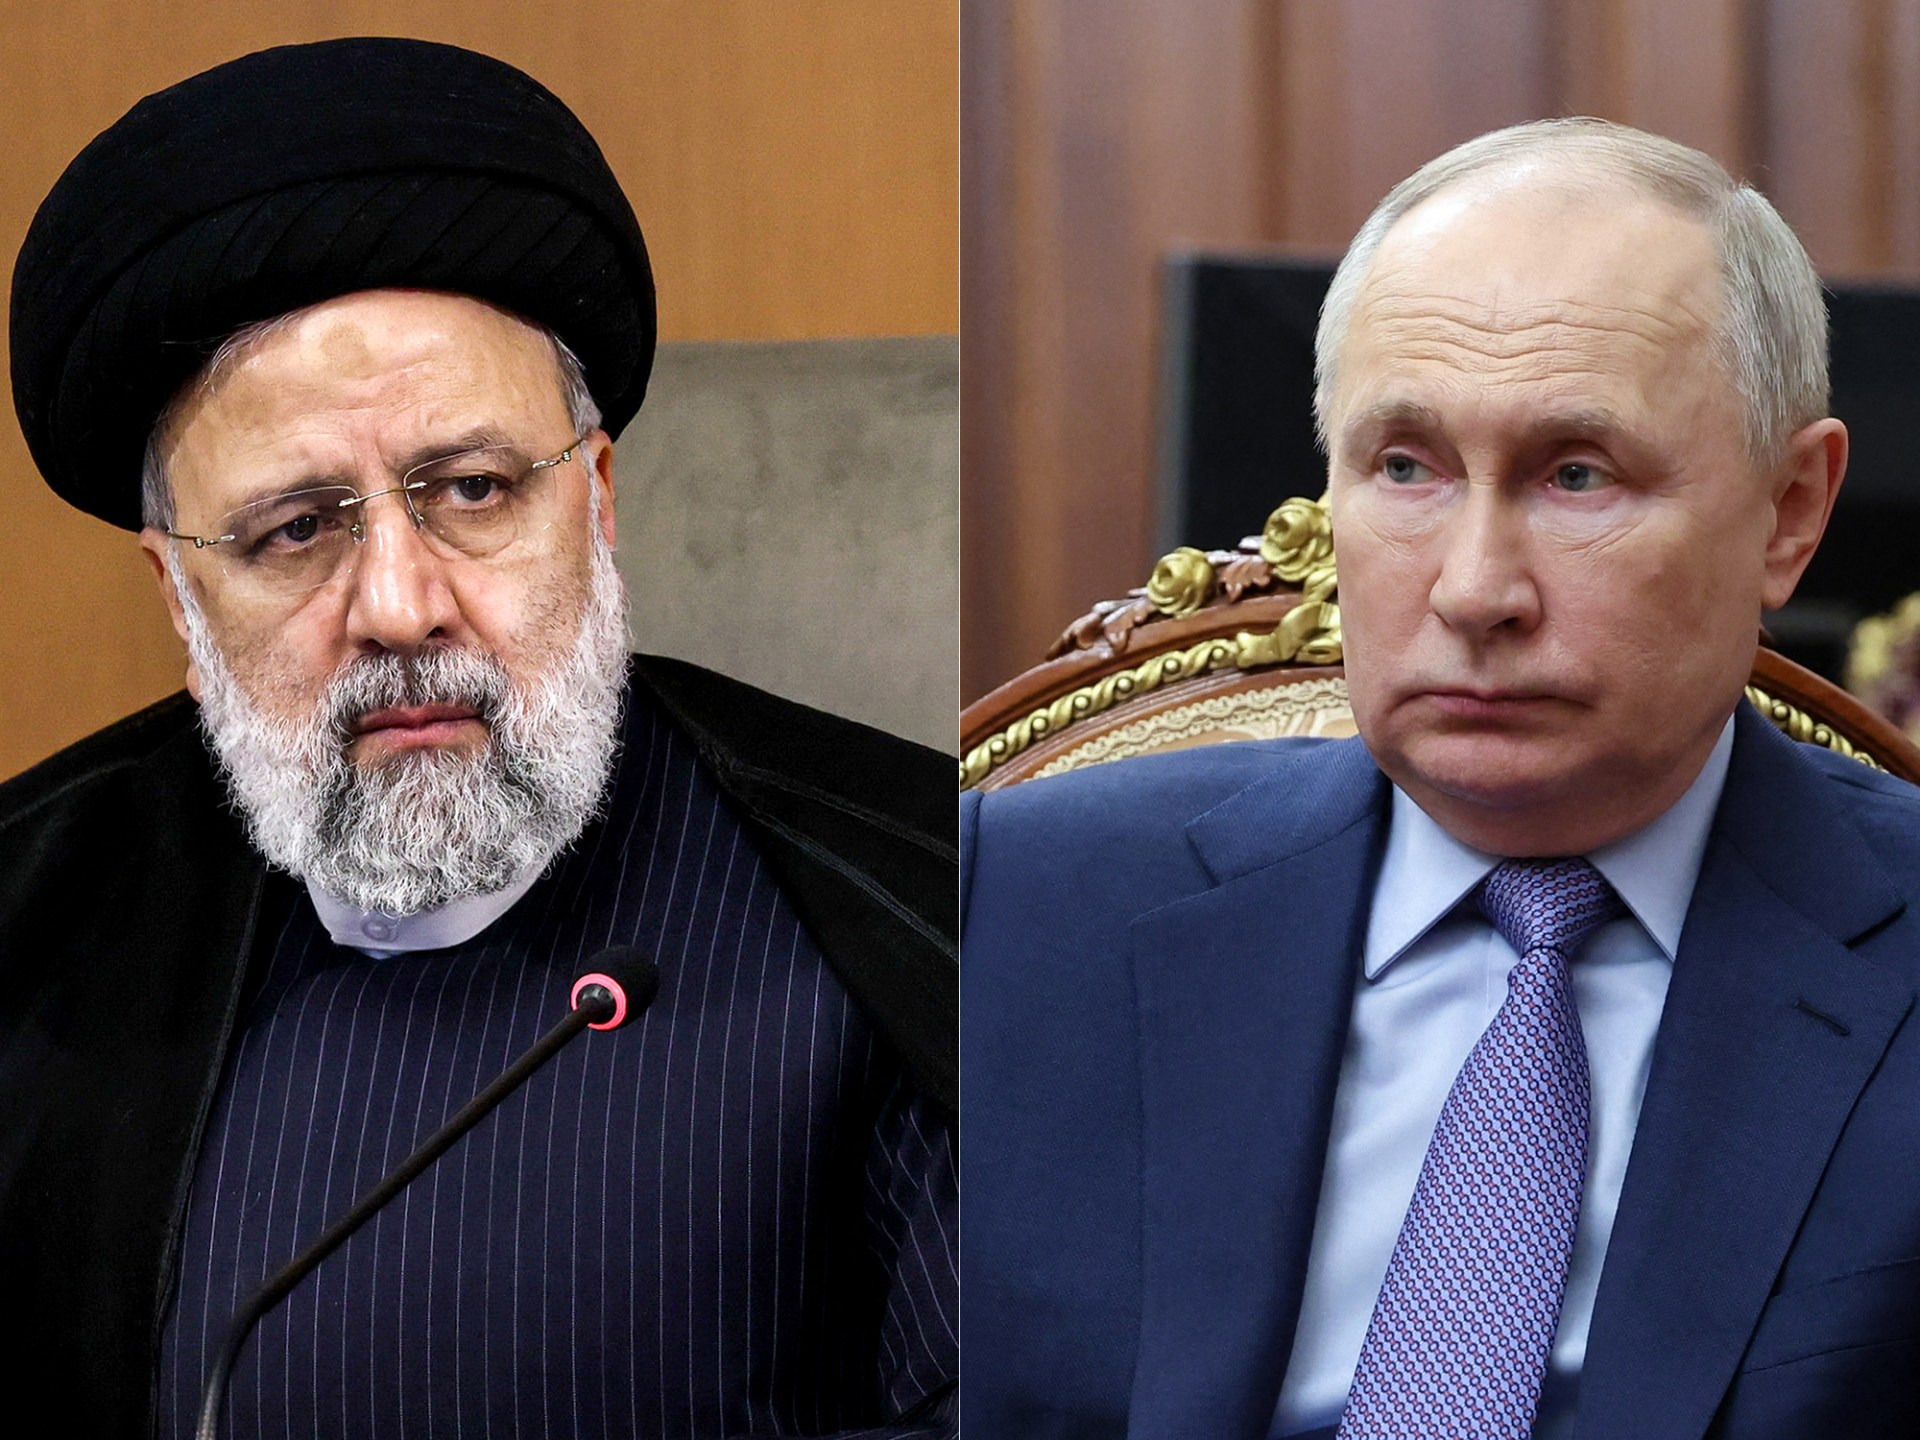 Poutine de Russie appelle à la retenue lors de son appel avec Raïssi d’Iran alors que les tensions montent |  Nouvelles